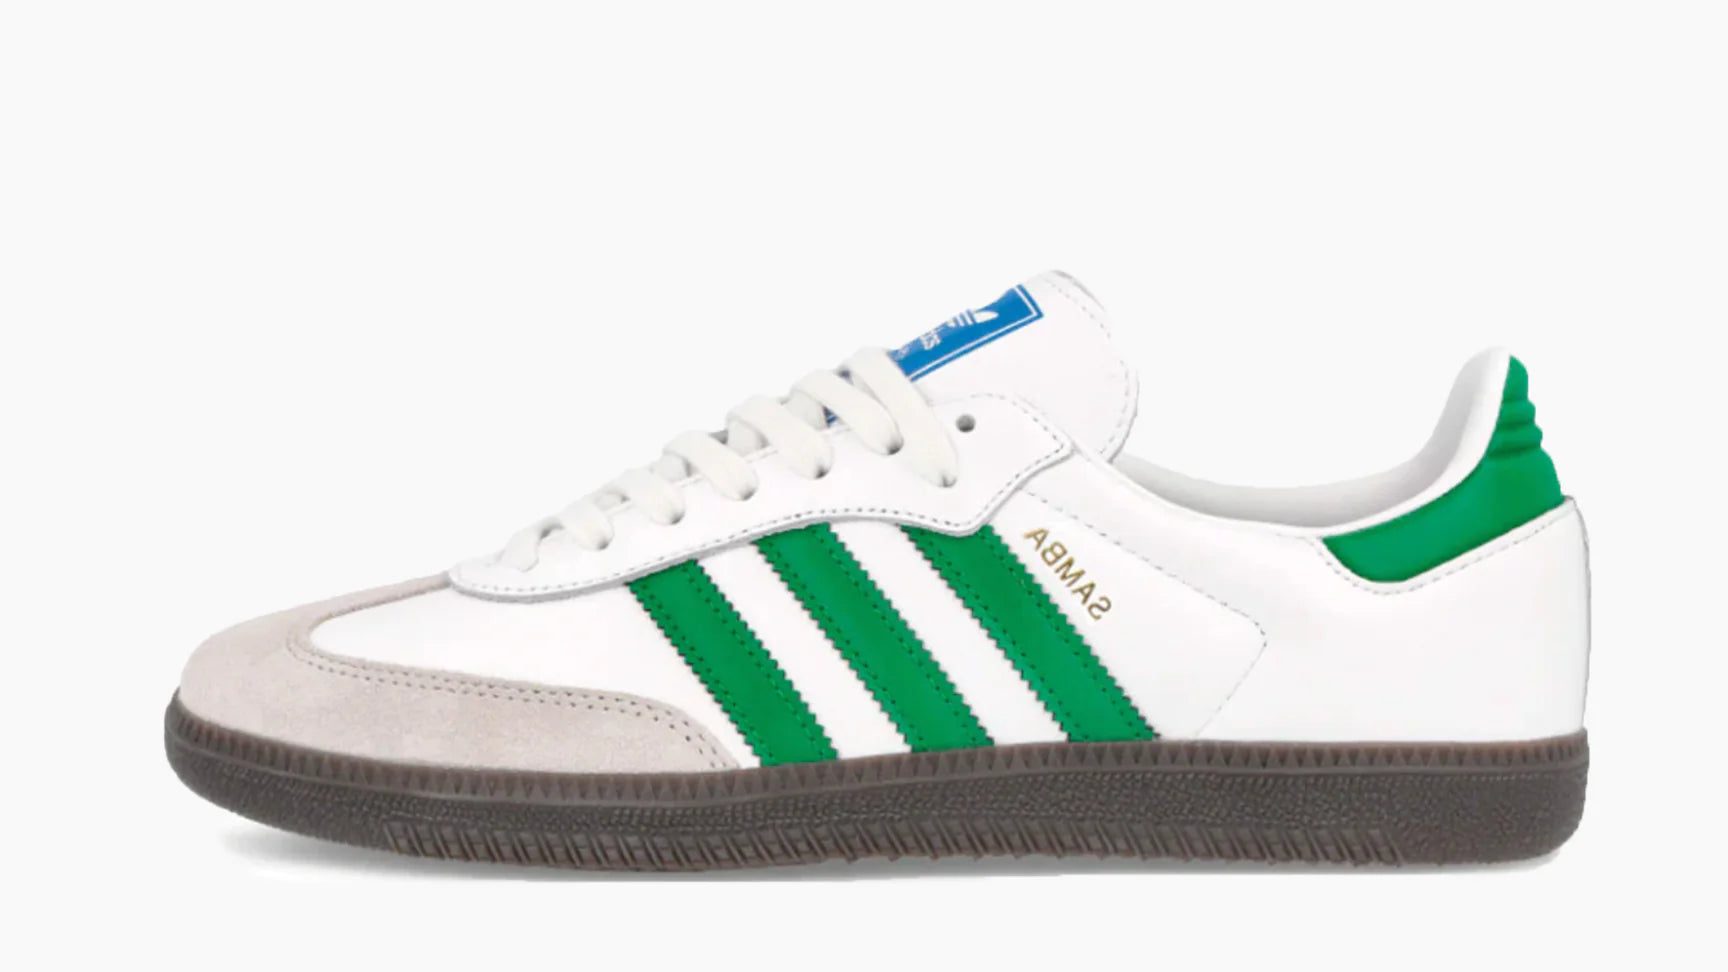 Adidas Samba OG Footwear White Green